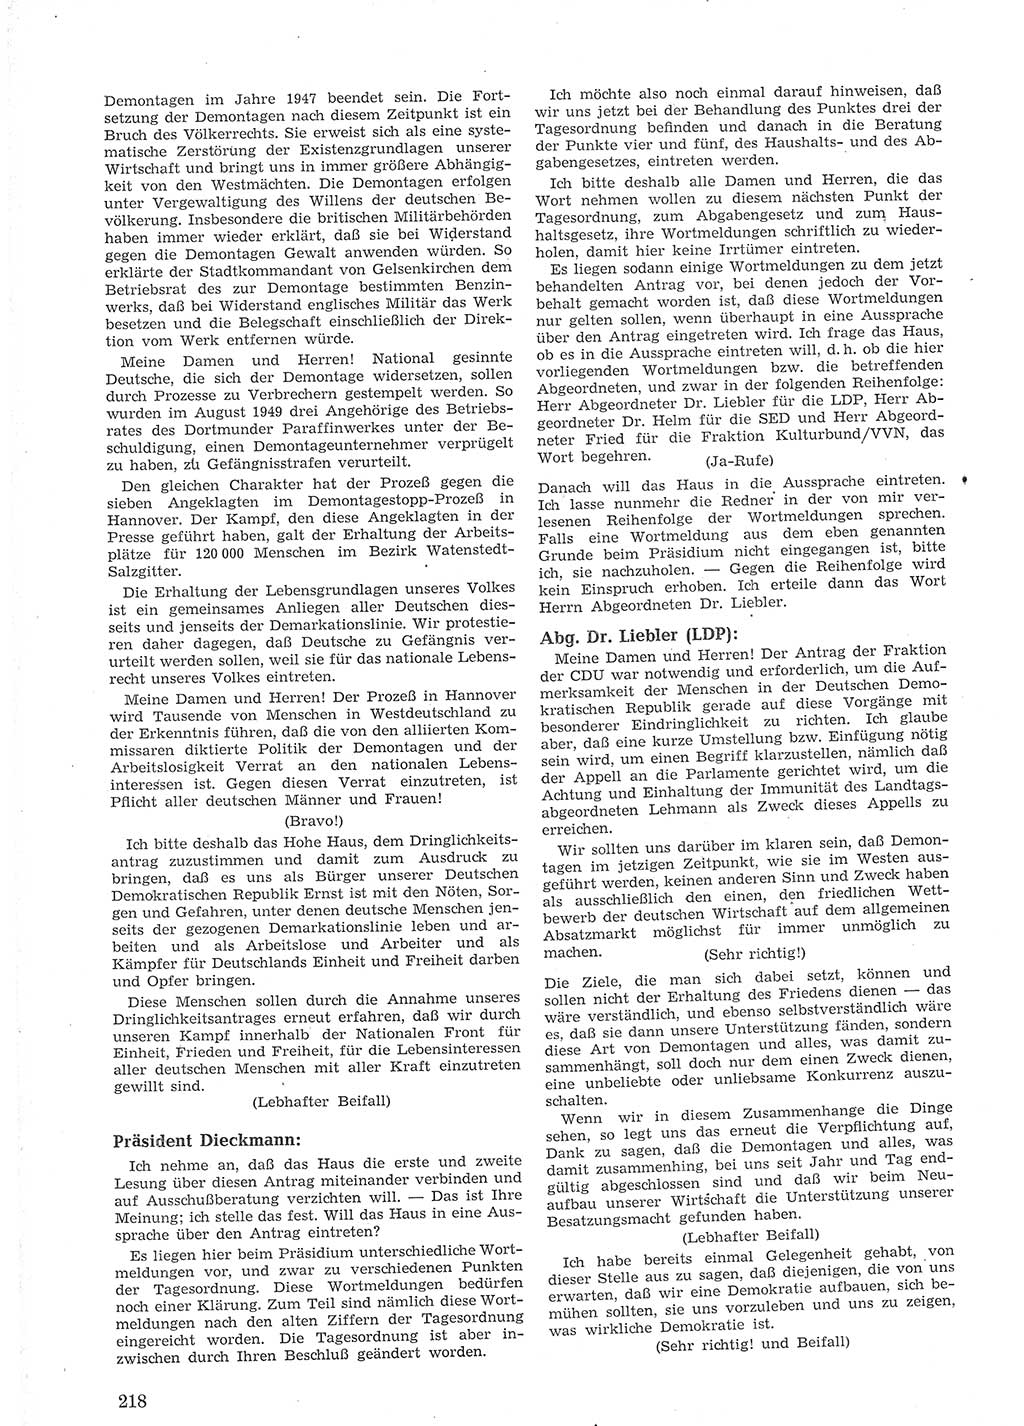 Provisorische Volkskammer (VK) der Deutschen Demokratischen Republik (DDR) 1949-1950, Dokument 232 (Prov. VK DDR 1949-1950, Dok. 232)